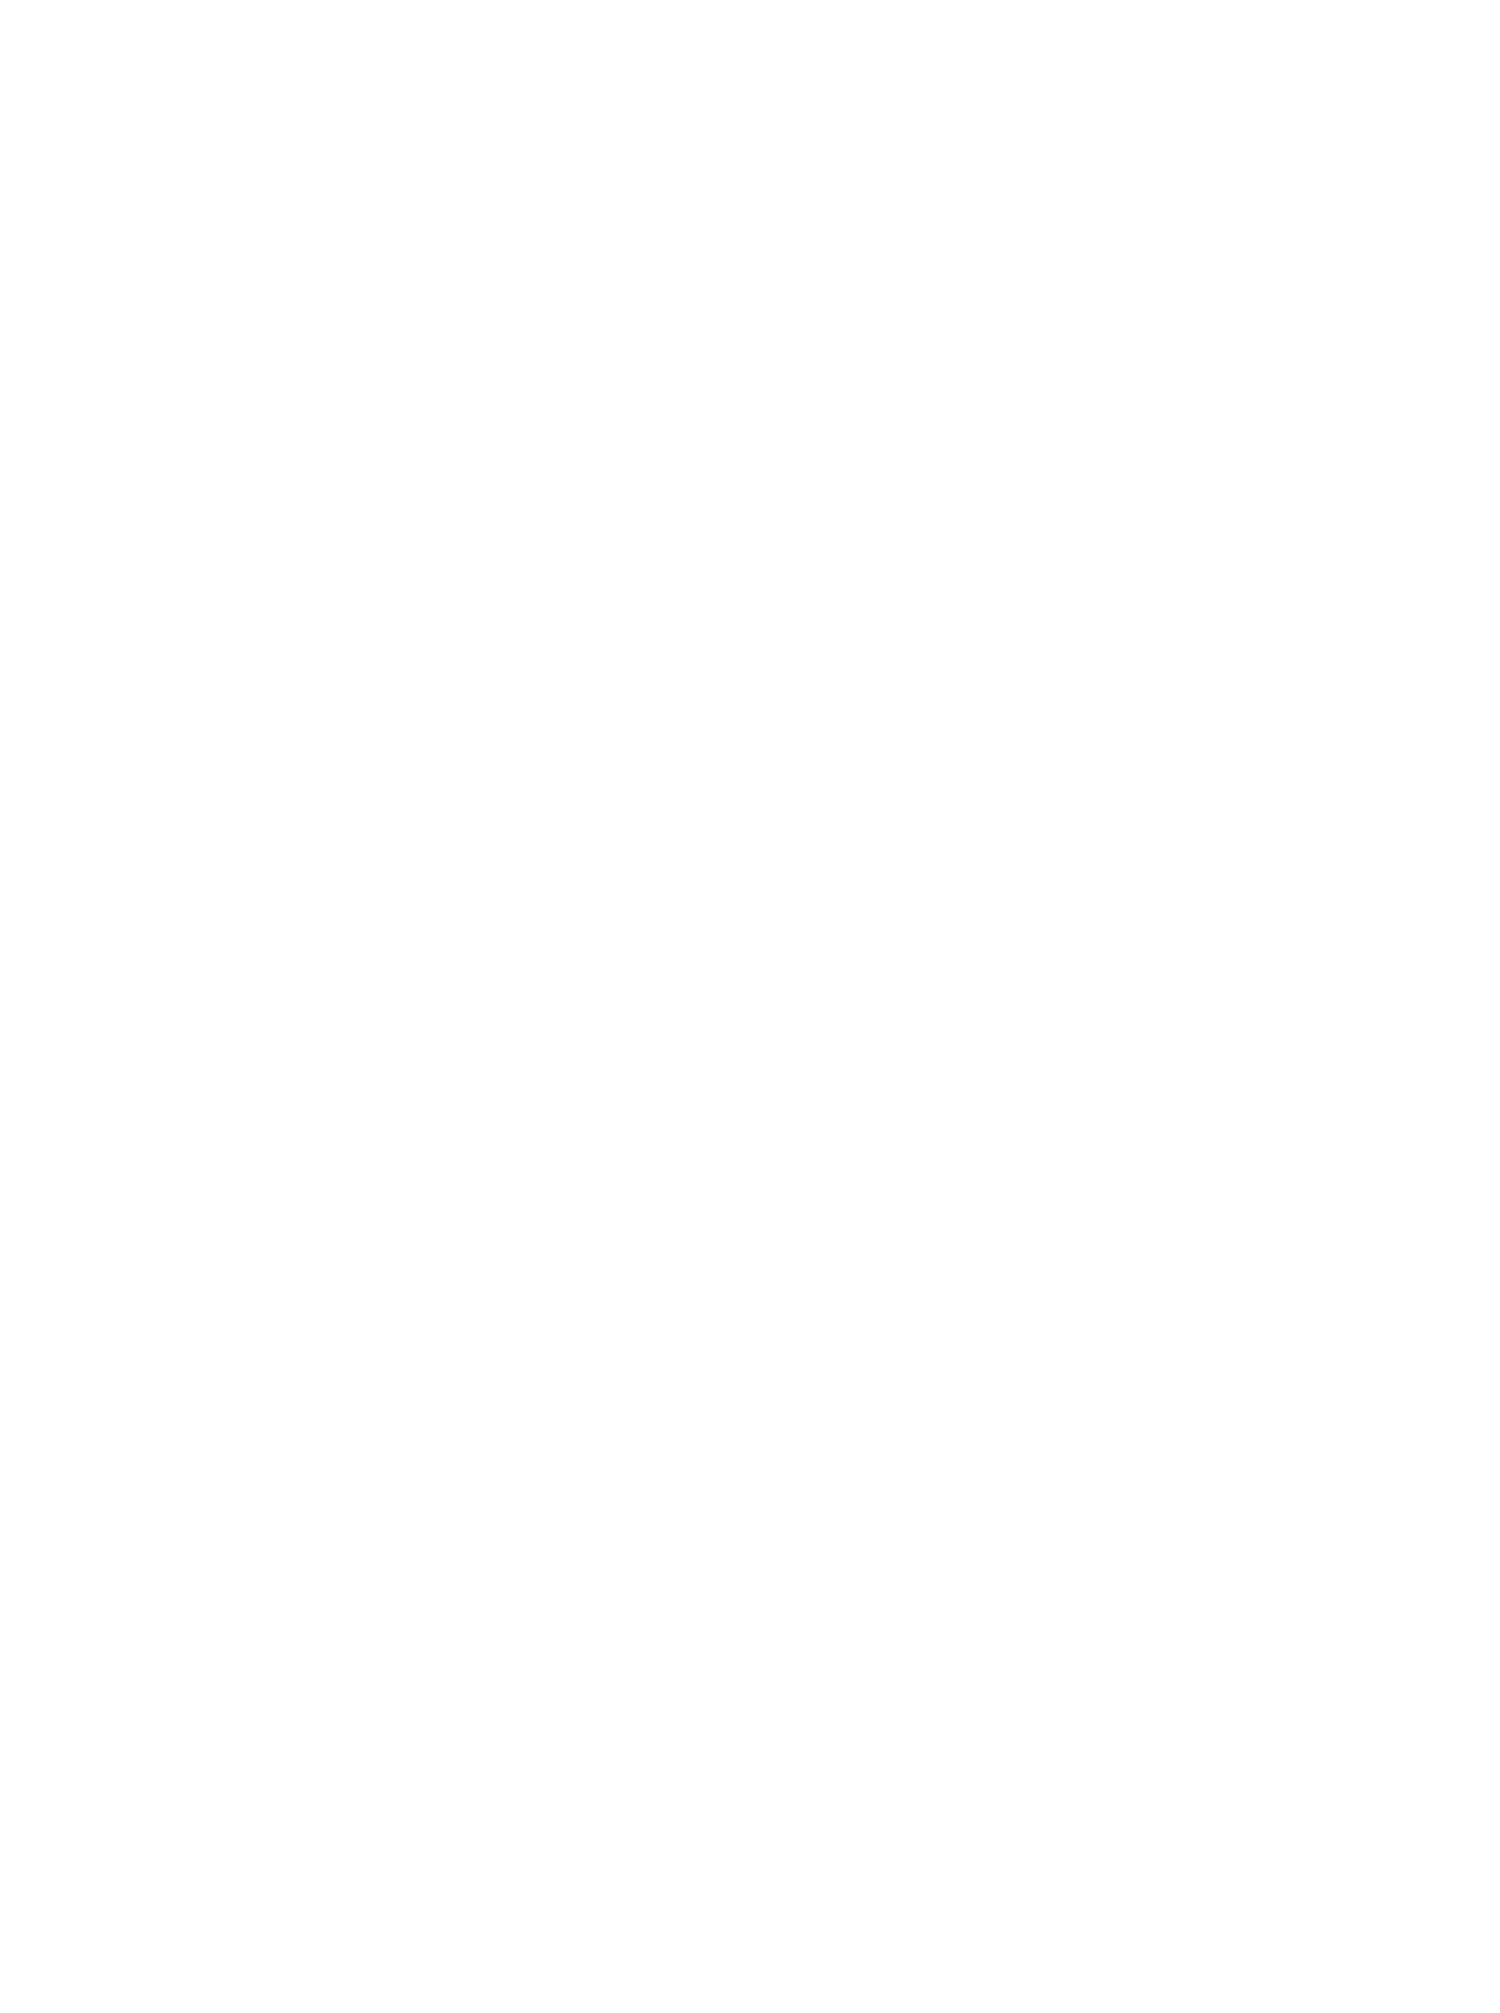 Roitman Legal